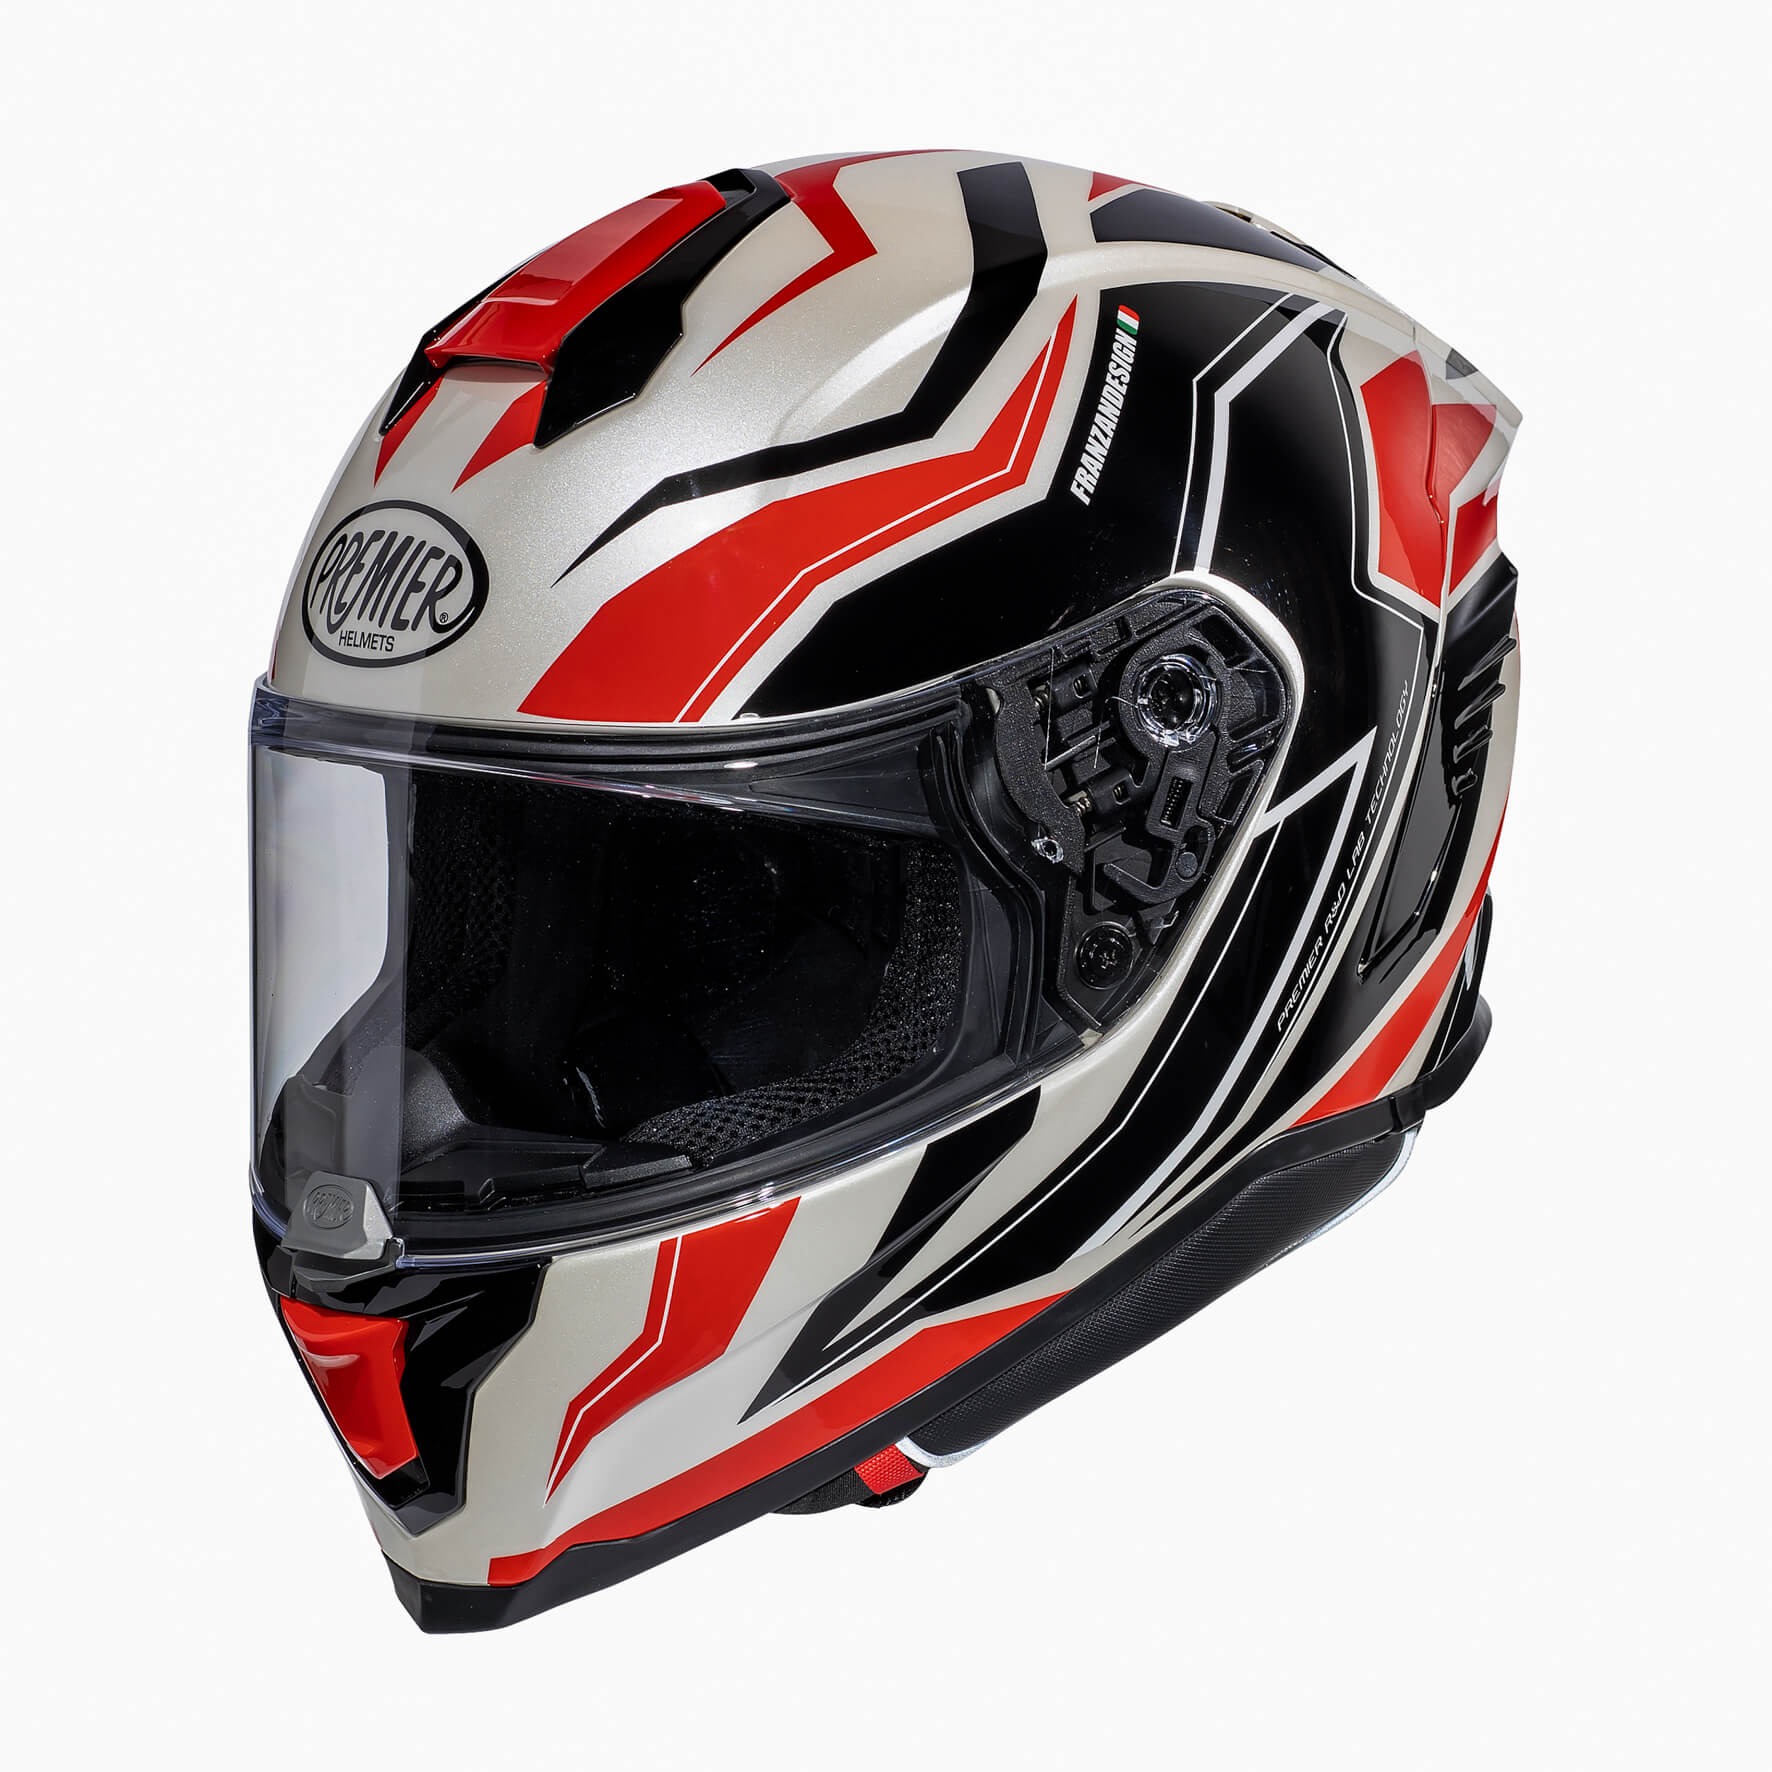 Image of Premier Hyper RW 2 Full Face Helmet Size S EN